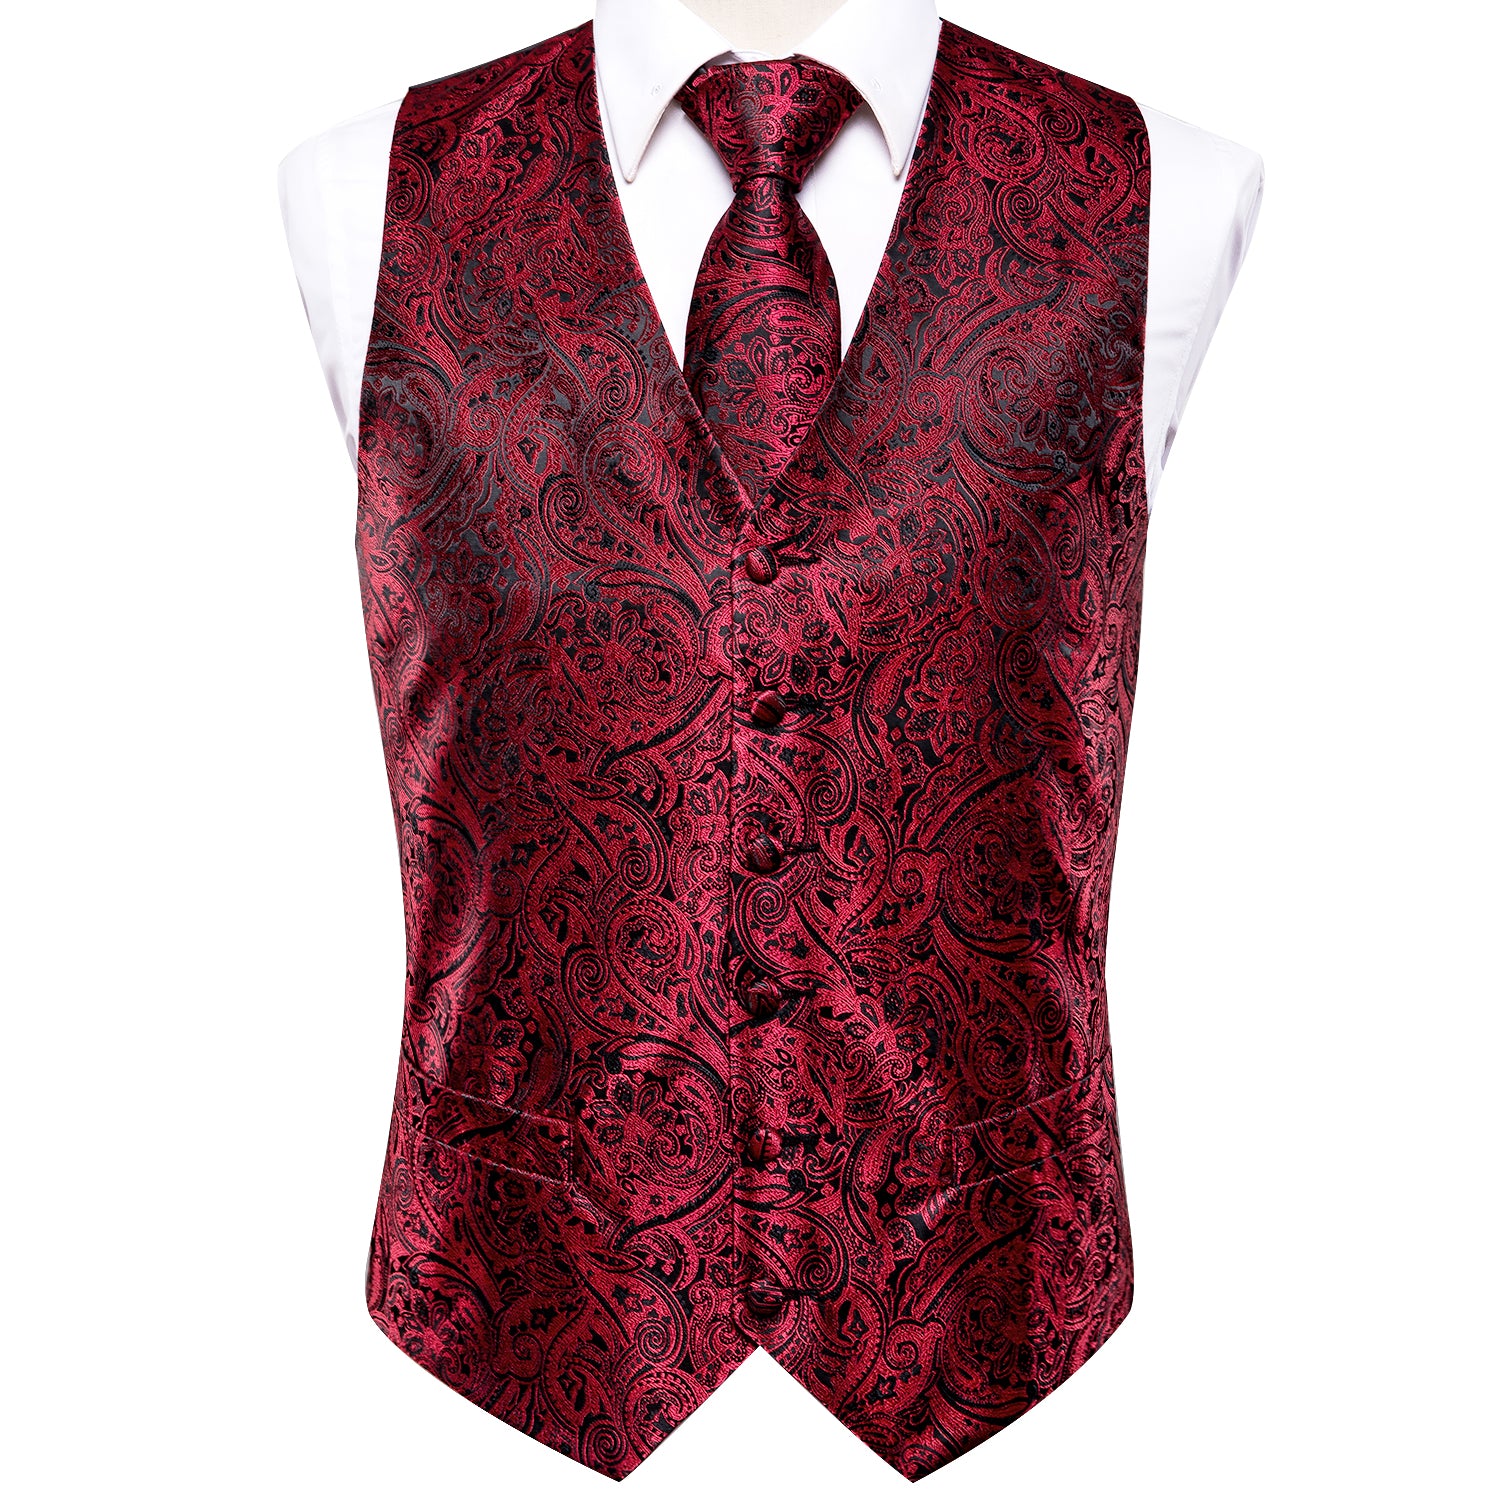 Red Black Paisley Silk Men's Vest Hanky Cufflinks Tie Set Waistcoat Suit Set